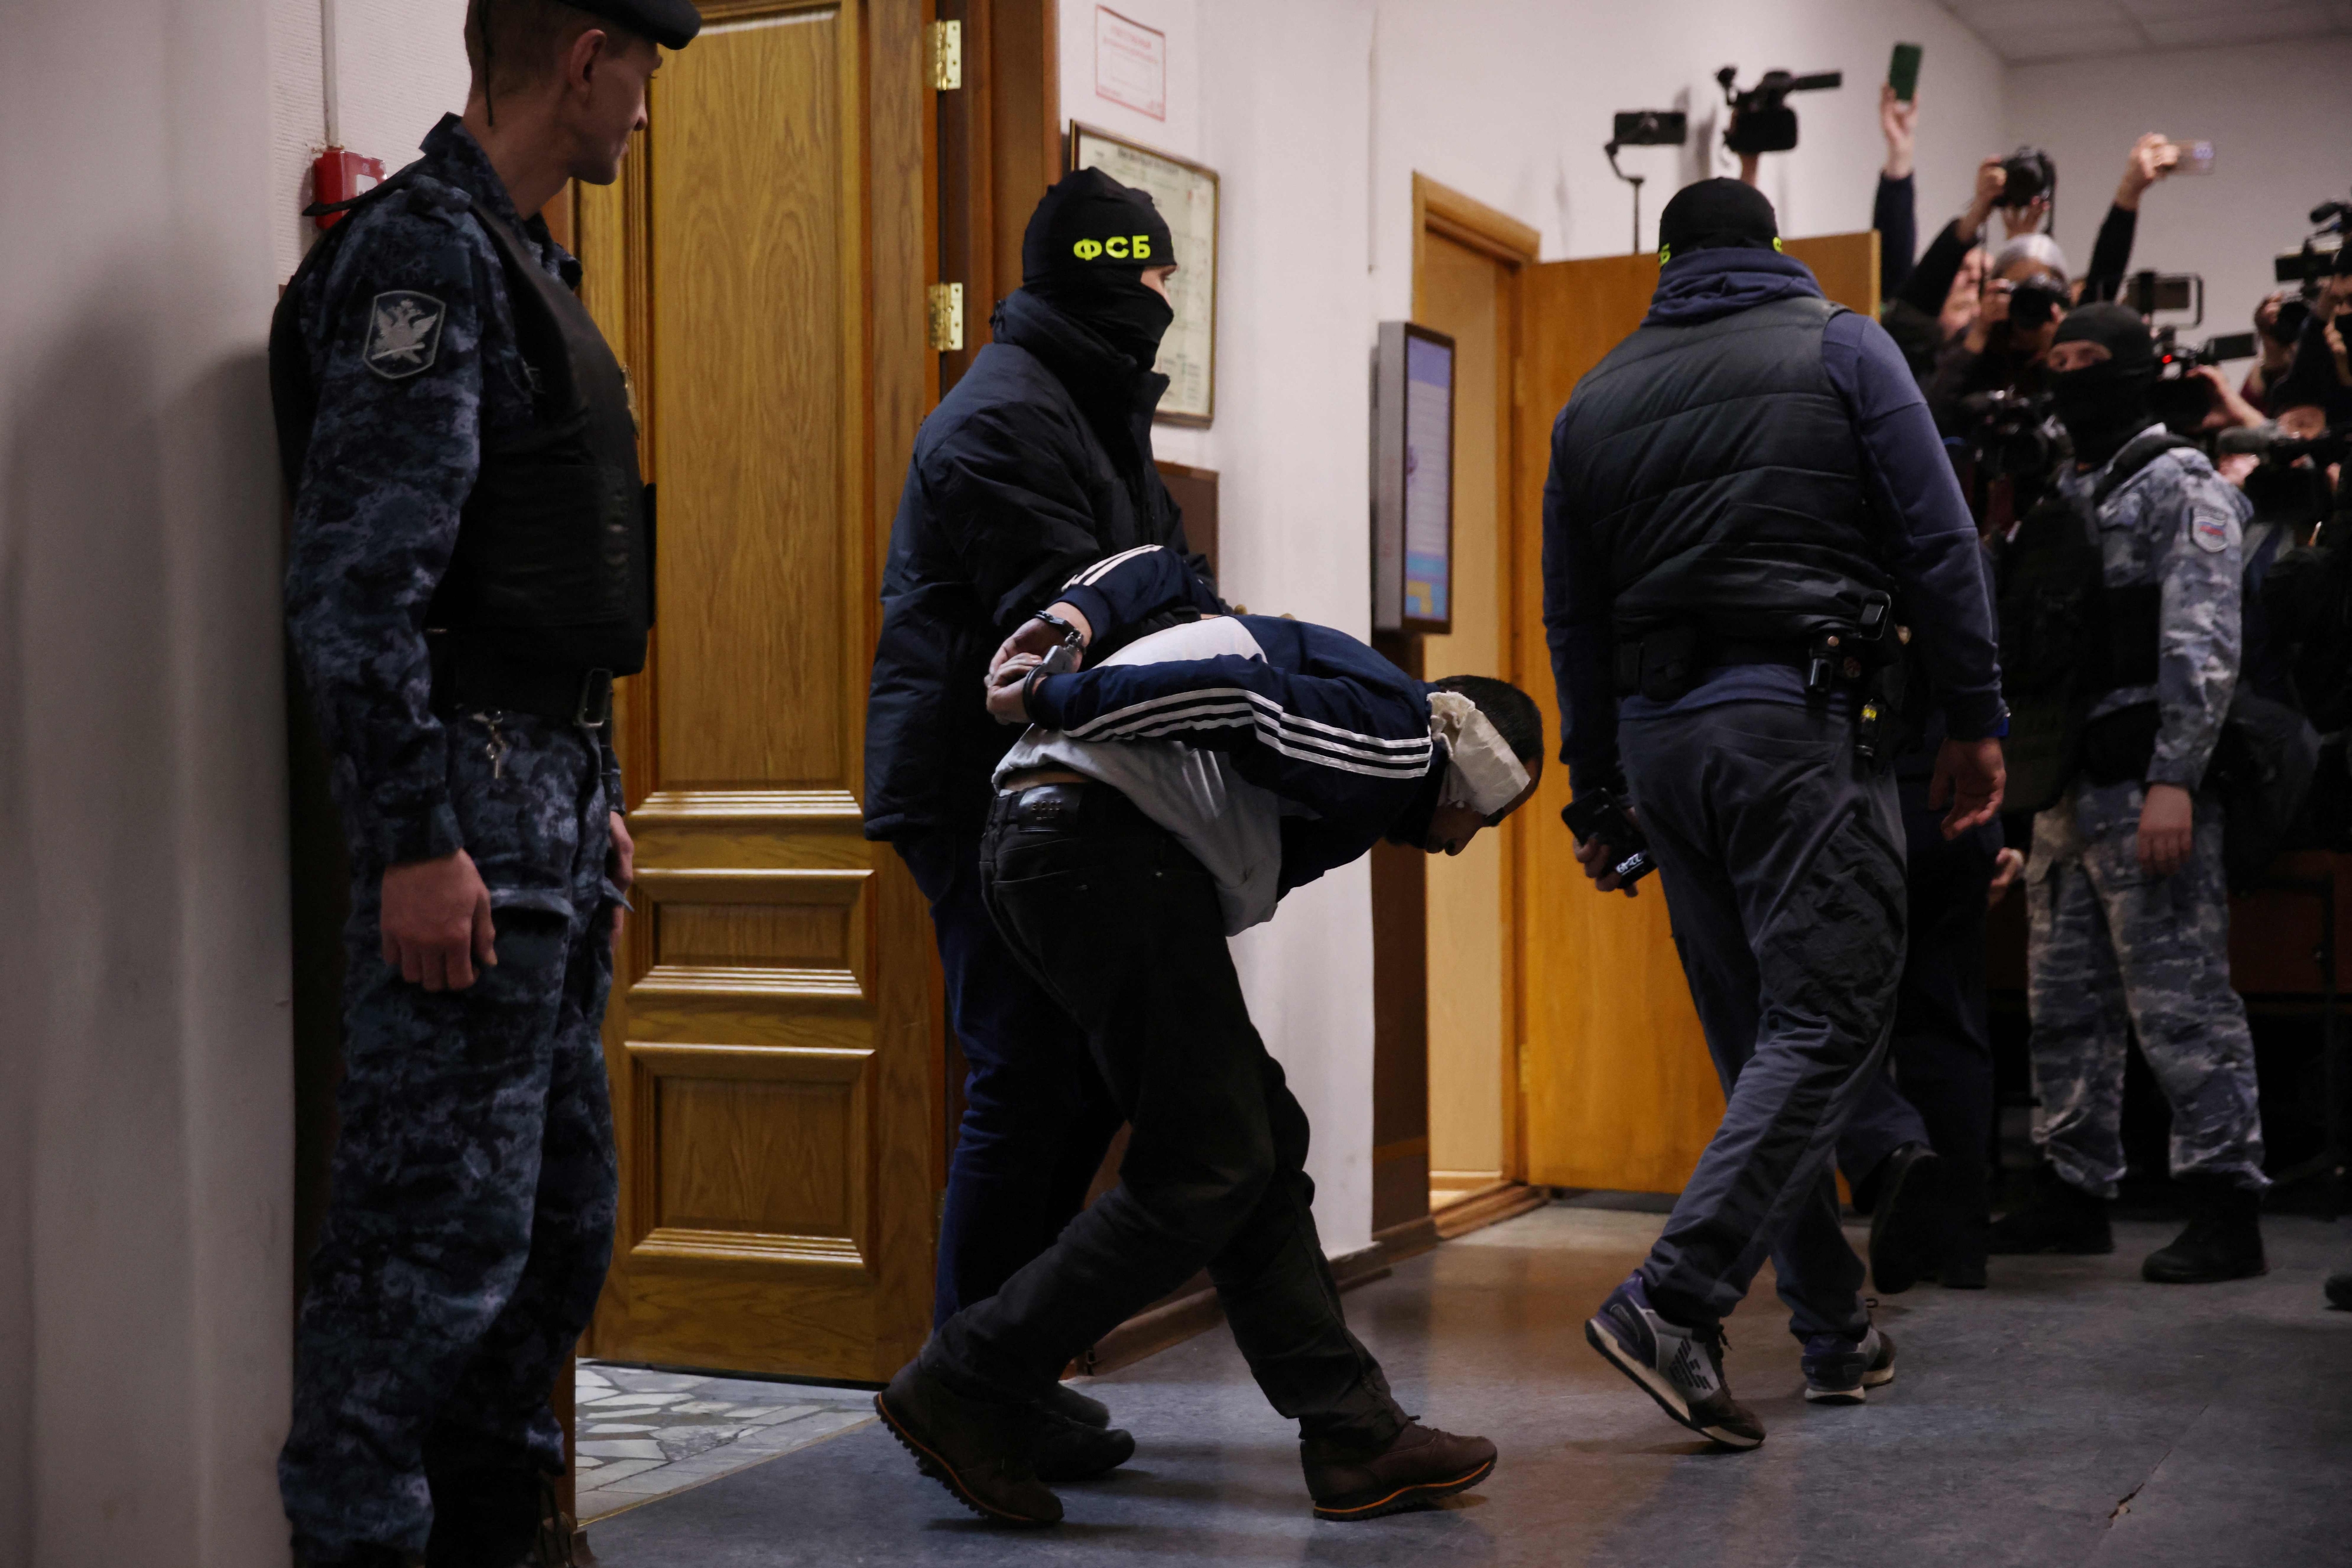 24일(현지시간) 러시아 모스크바 바스마니 지방법원에서 이슬람 극단주의 테러단체인 ‘이슬람국가 호라산’(ISIS-K)의 테러 모의에 가담한 남성 용의자(가운데)가 구속 전 심리를 받기 위해 집행관들에게 끌려가고 있다. 지난 22일 모스크바 크라스노고르스크의 ‘크로커스 시티홀’ 공연장에서 일어난 총격 사건으로 어린이 3명을 포함해 최소 137명이 사망했고, 핵심 가담자 4명을 포함한 11명이 검거돼 조사를 받고 있다. 모스크바 AFP 연합뉴스